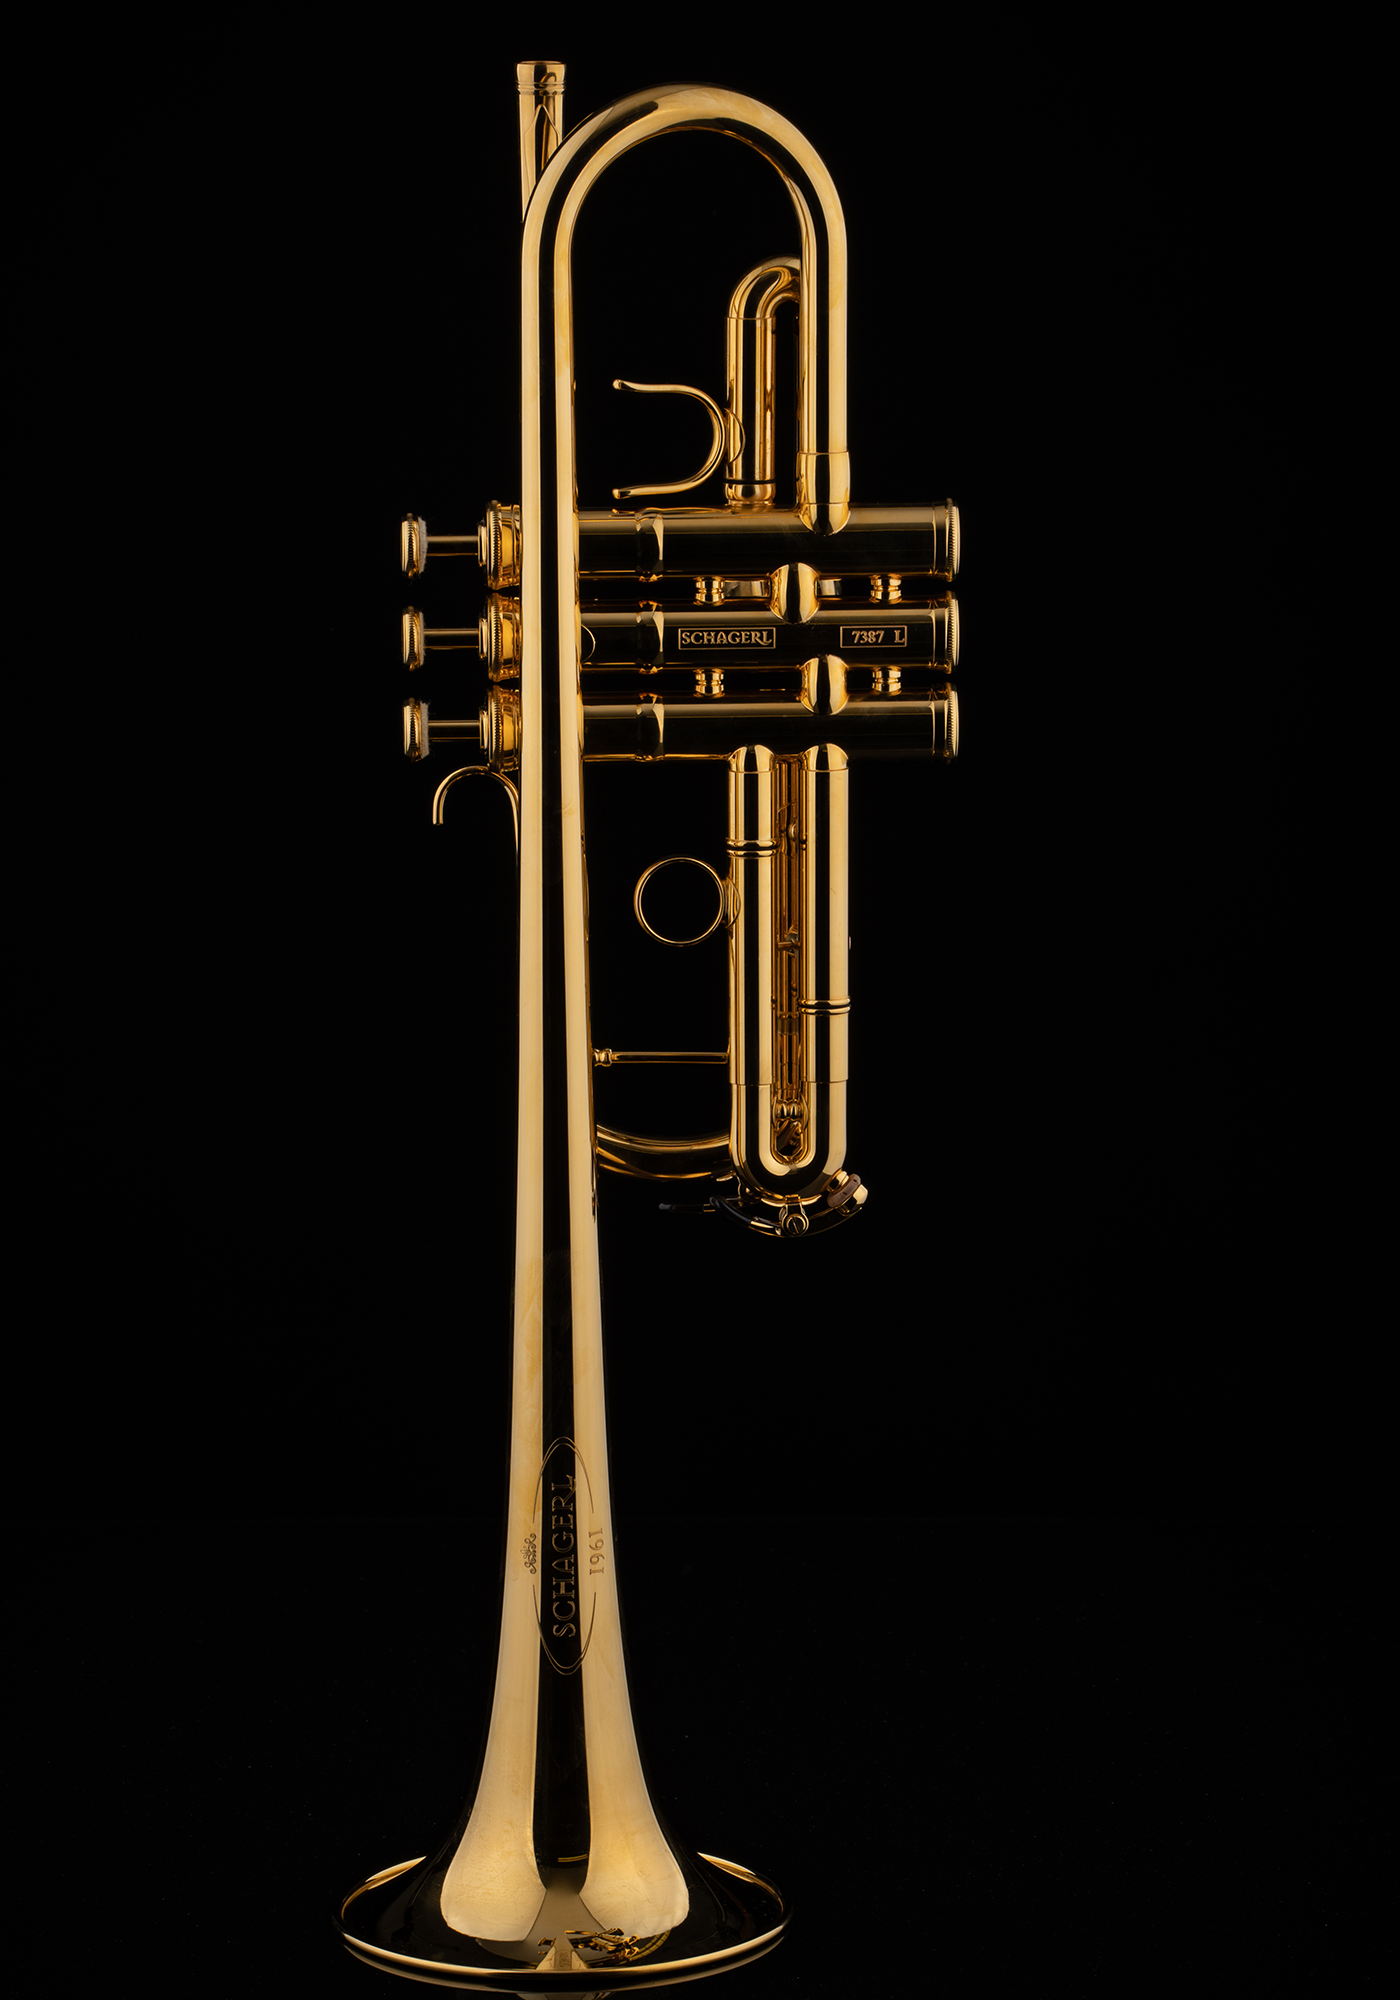 Schagerl C-Trompete "1961" vergoldet